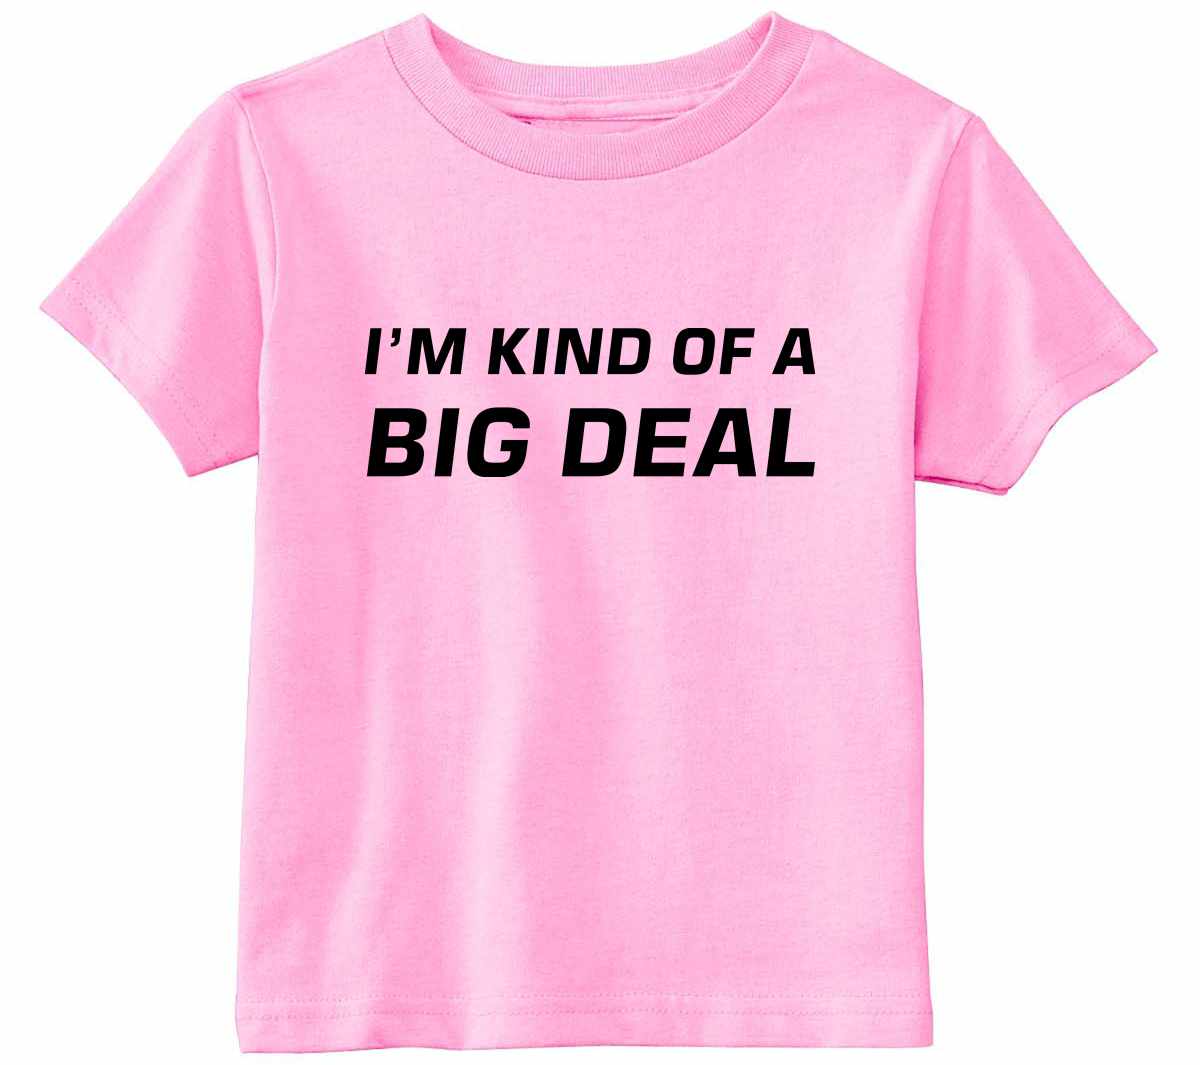 I'm Kind of a Big Deal on Infant-Toddler T-Shirt (#842-7)